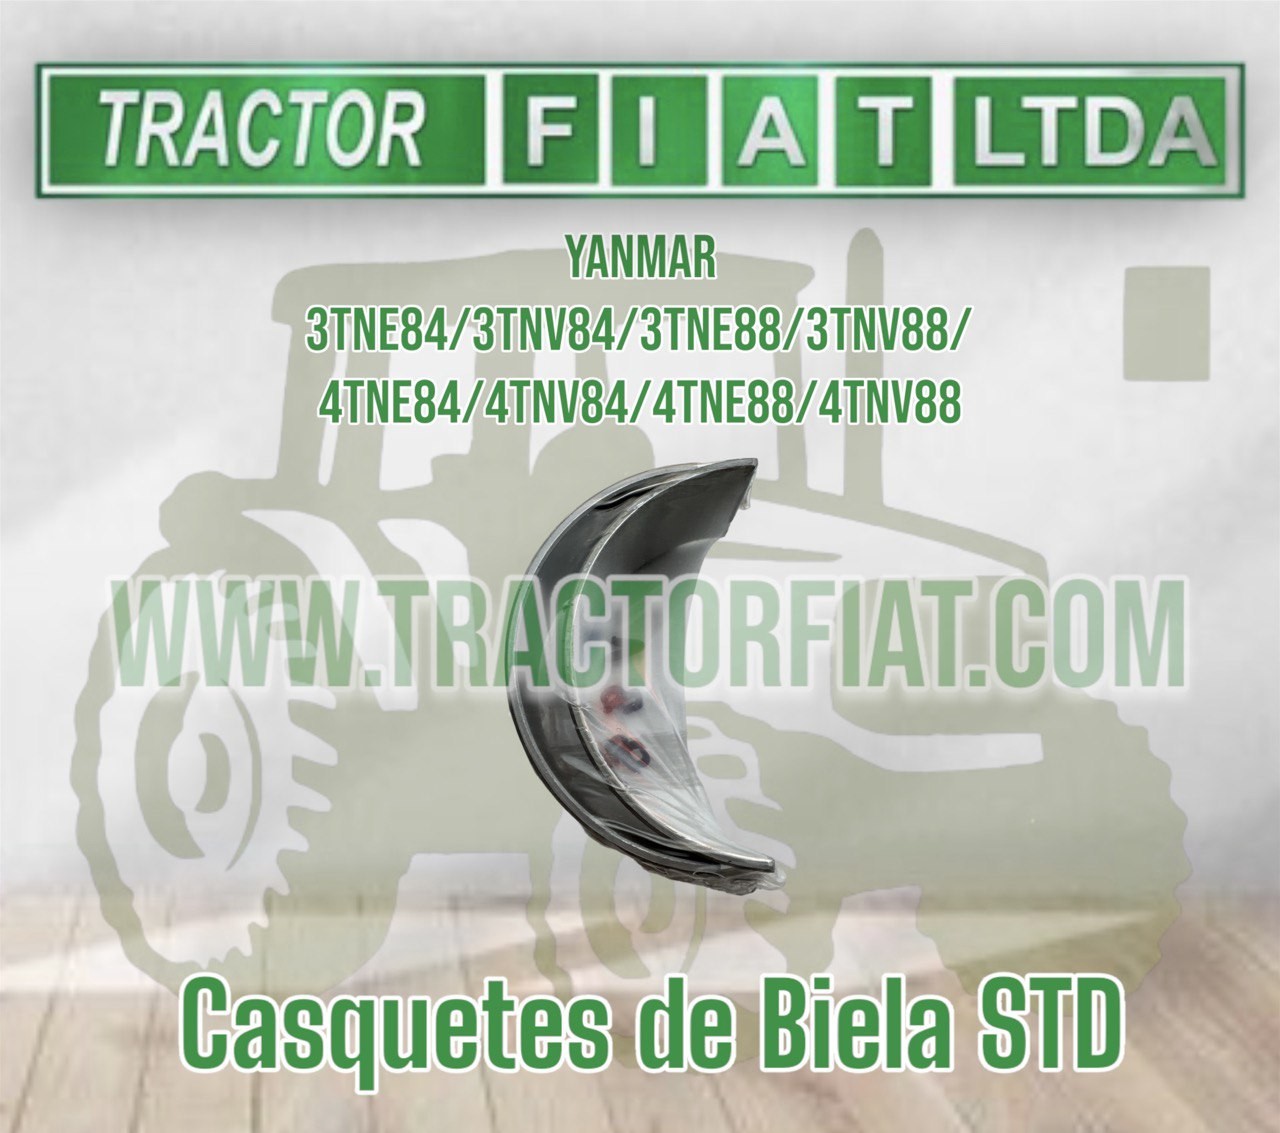 CASQUETES DE BIELA STD - YANMAR SERIES 84 Y 88 / 3 y 4 CILINDROS